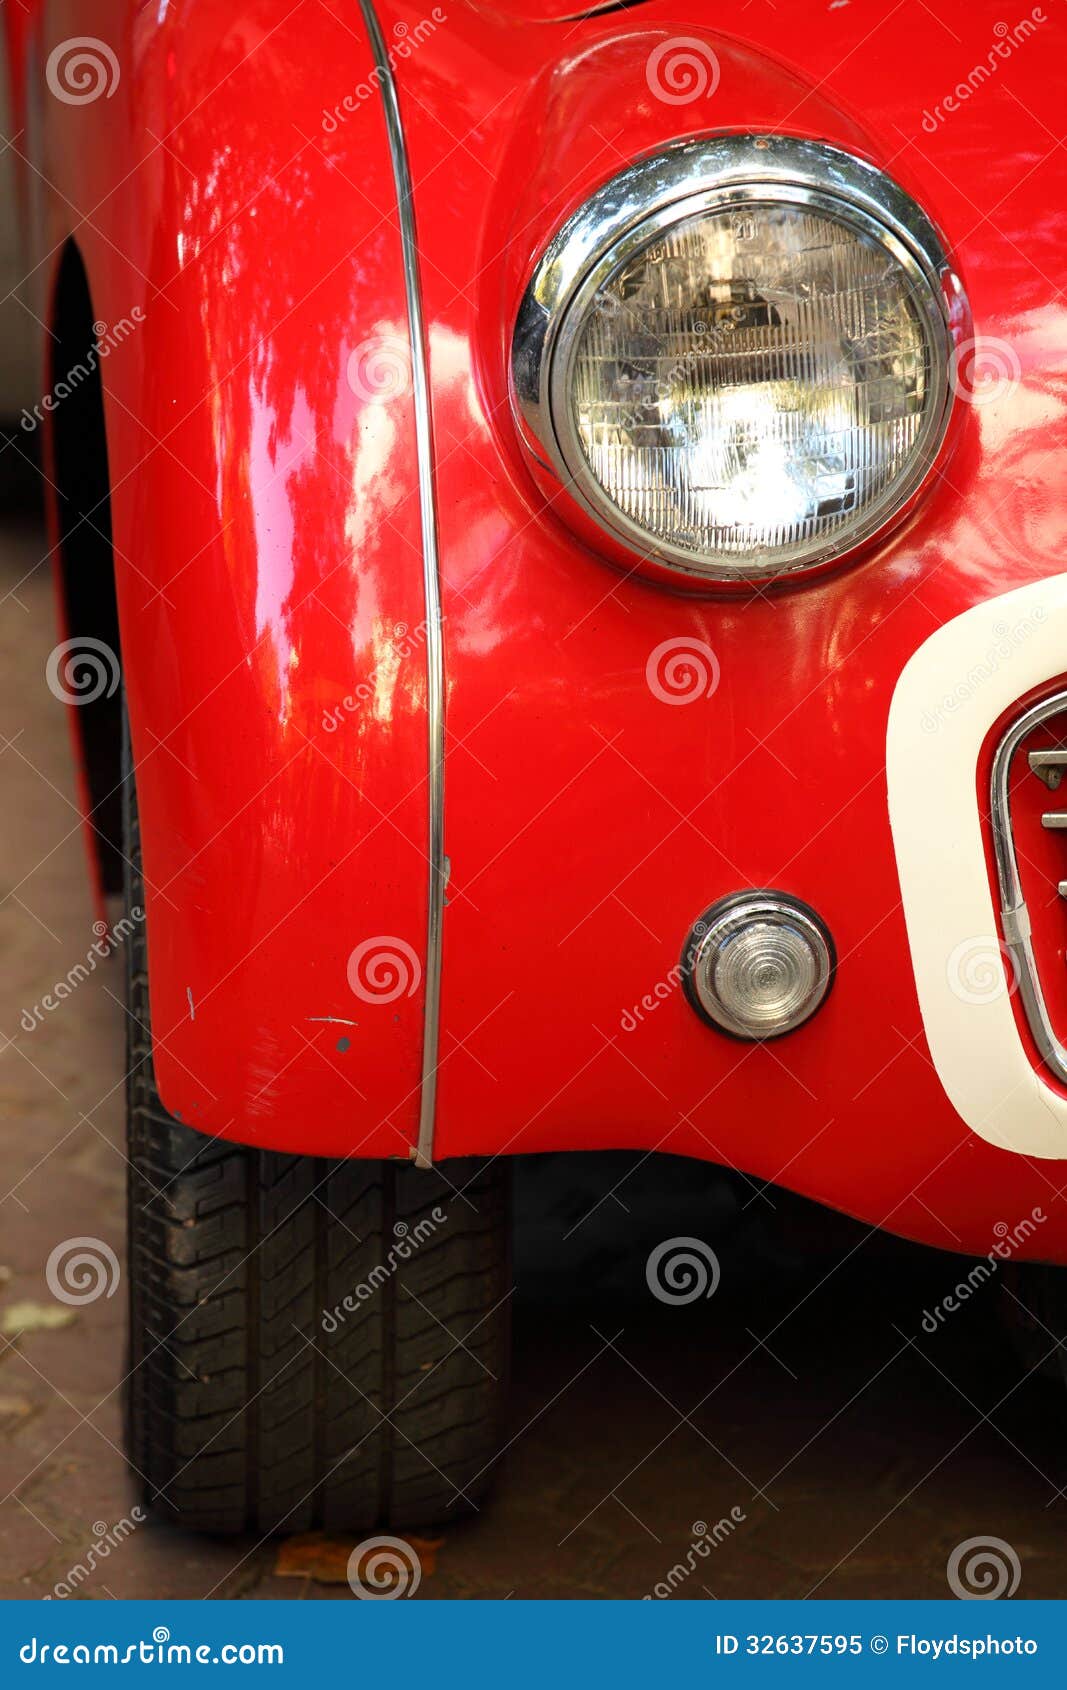 headlights-triumph-tr-closeup-vintage-car-32637595.jpg